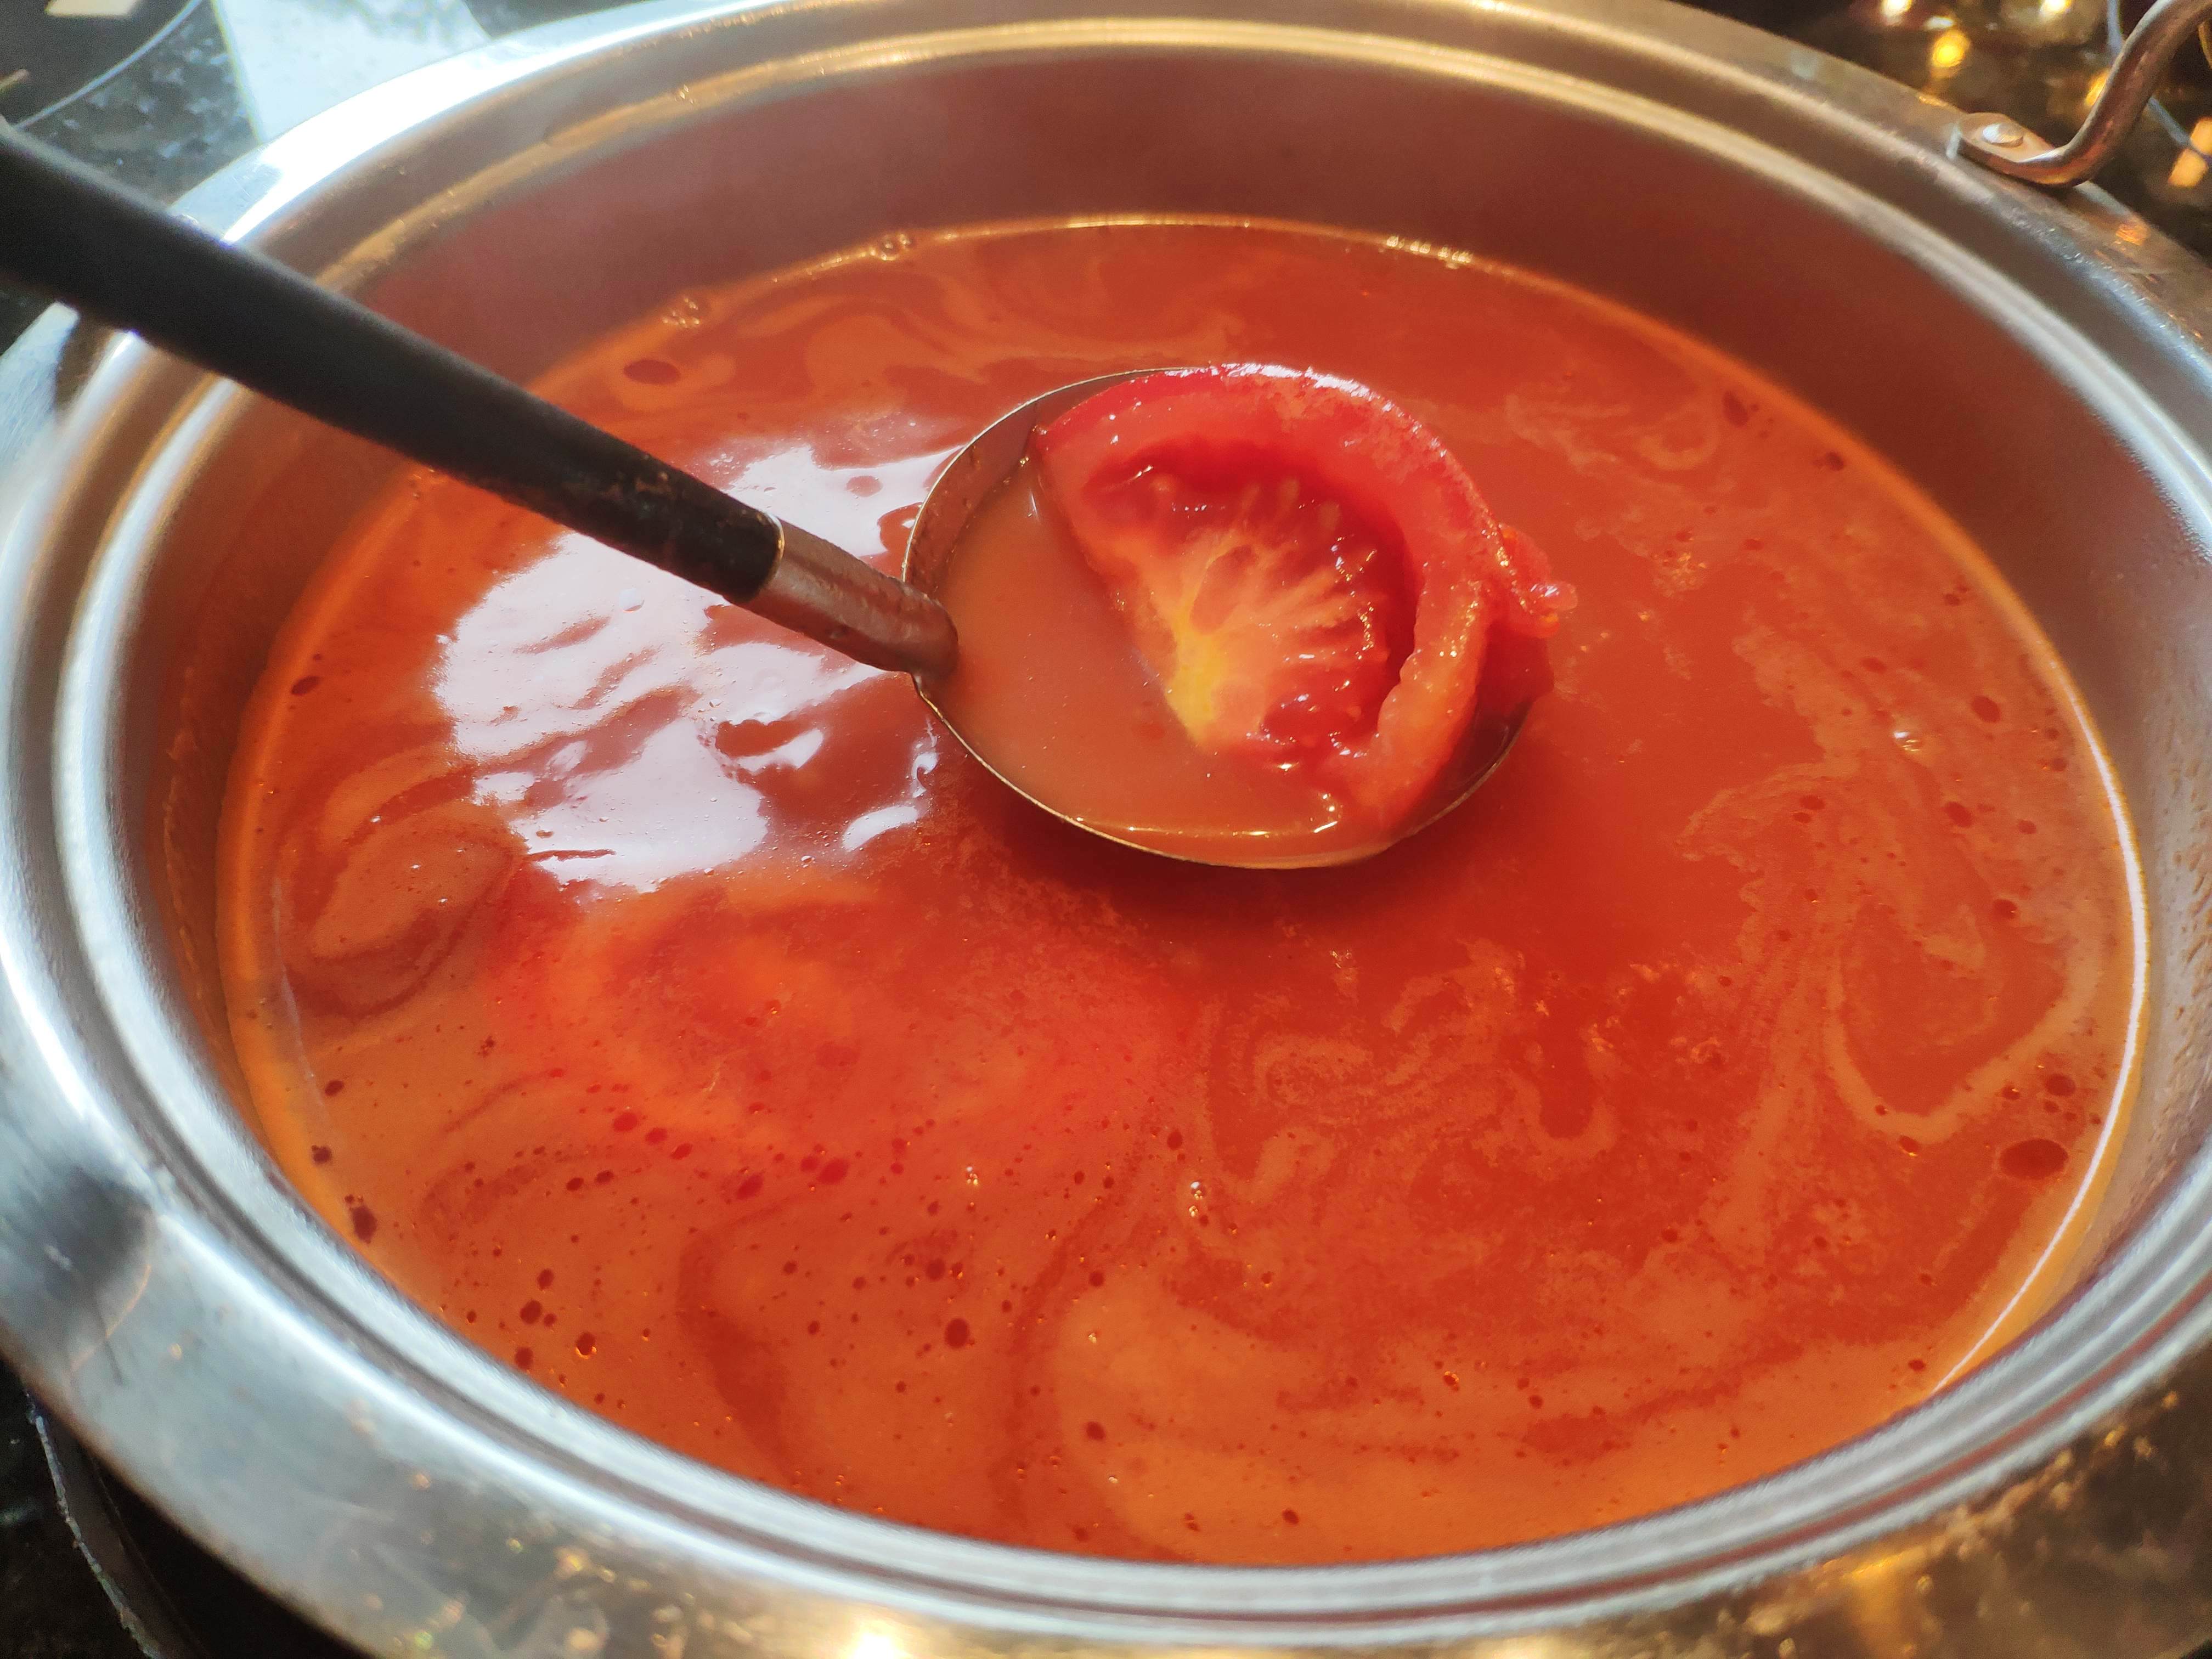 这次选的是西西里番茄汤,对于一个吃货来说,番茄锅底简直拯救了不能吃